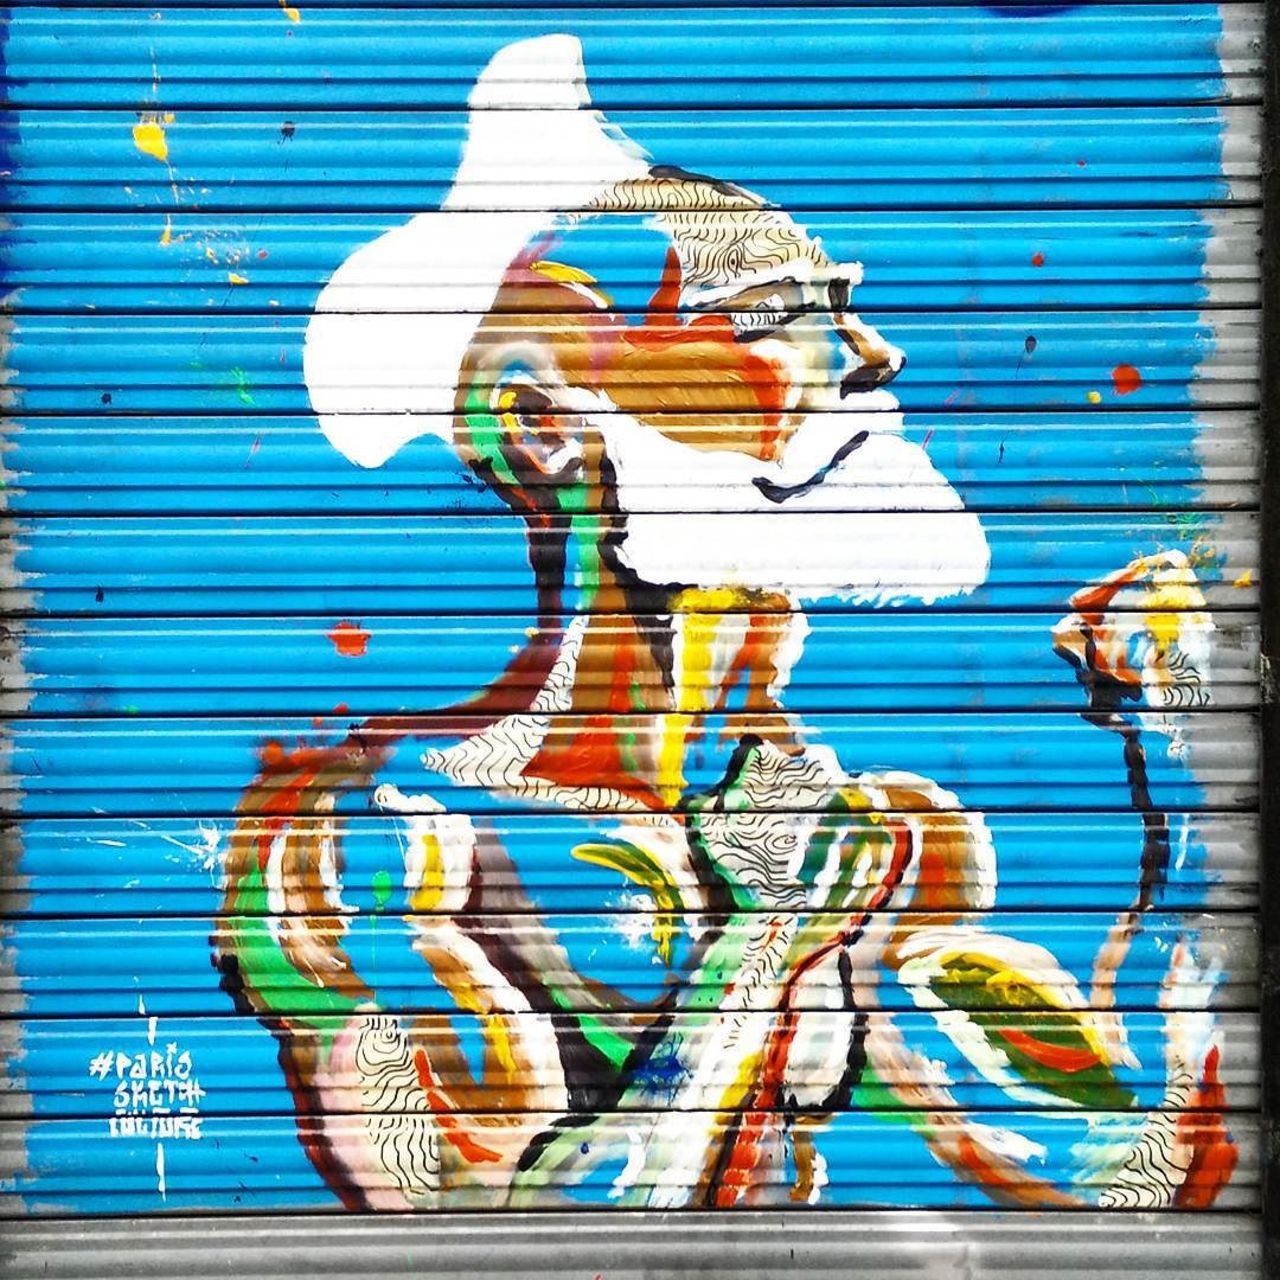 #Paris #graffiti photo by @ceky_art http://ift.tt/1S6jn4l #StreetArt https://t.co/SVZk7mhZ11